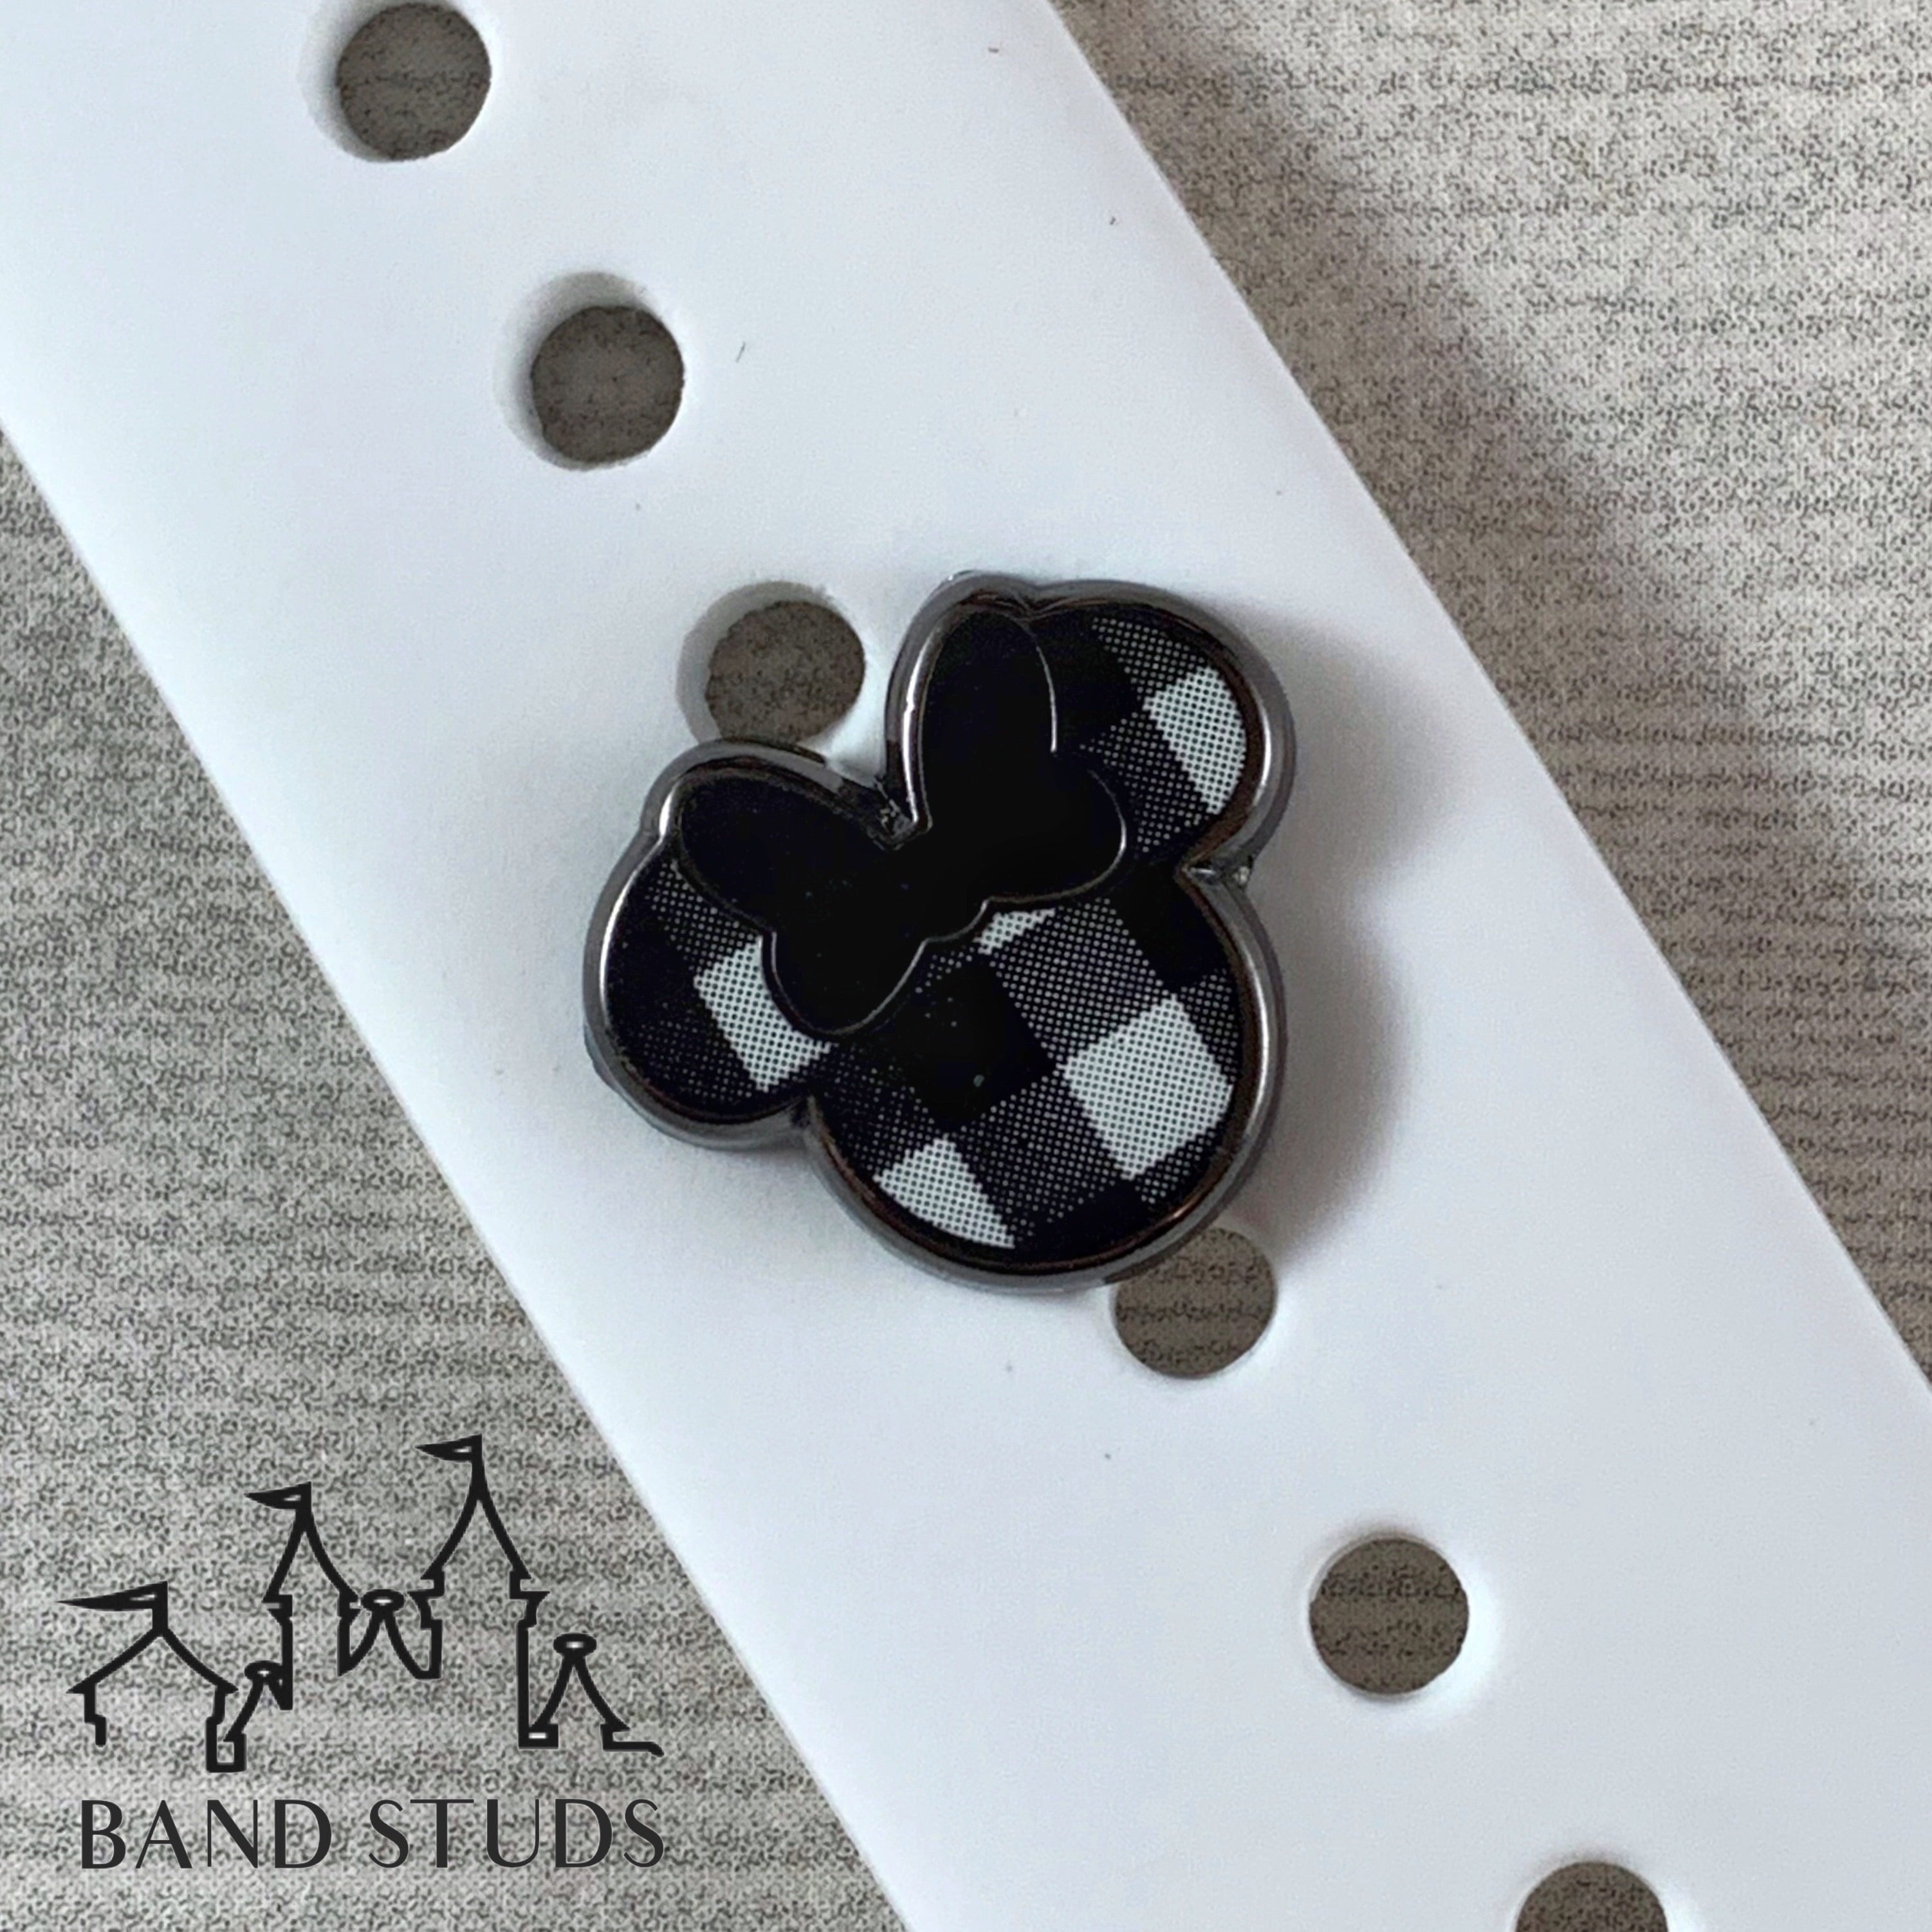 Band Stud® - Fall Collection - Buffalo Plaid / Buffalo Check Mouse